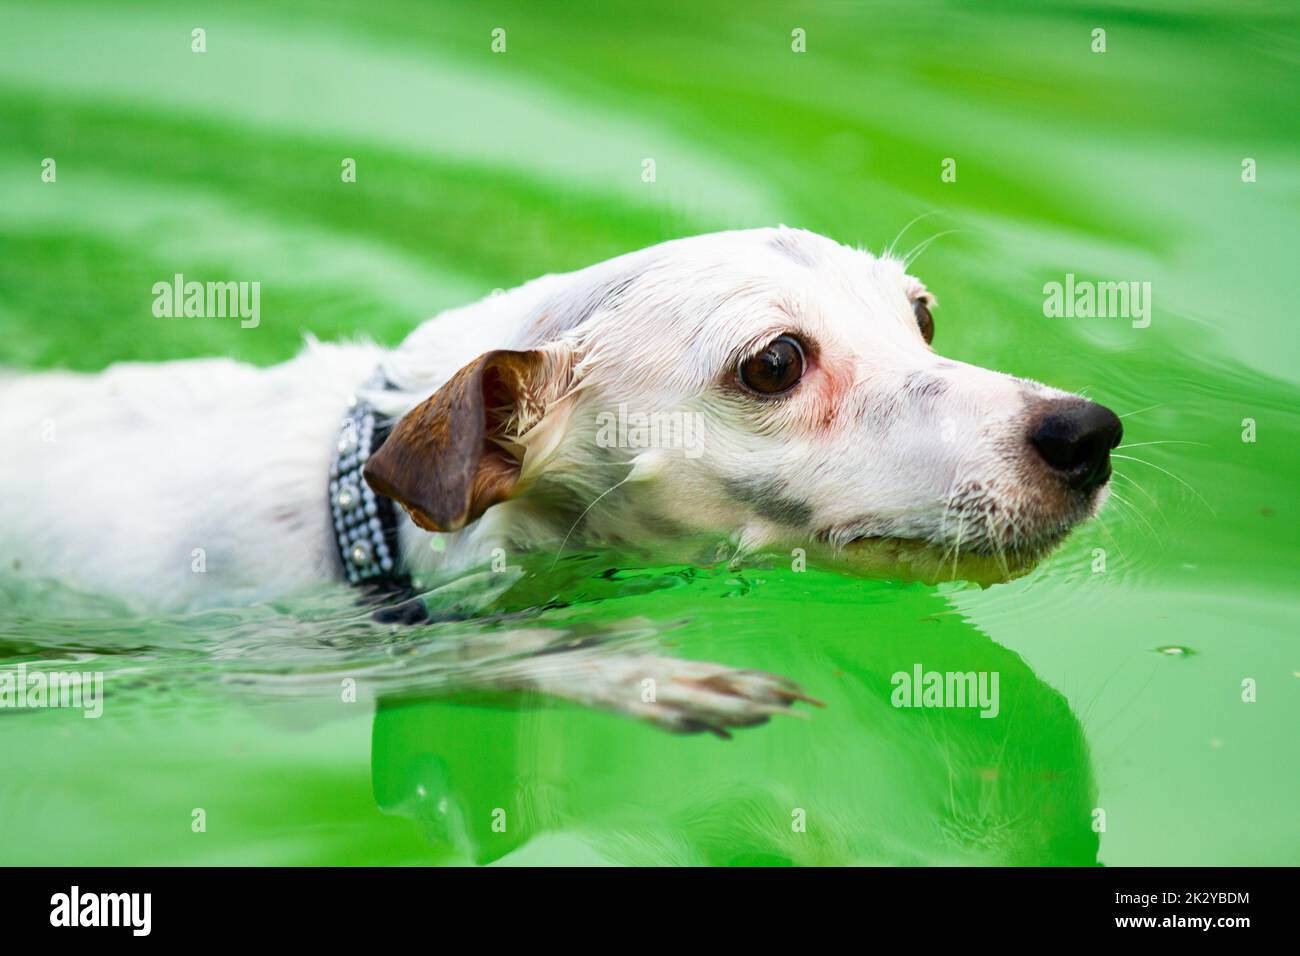 La vista ad angolo alto di un Jack Russell Terrier che indossa una cintura da colletto mentre nuota nell'acqua verde Foto Stock